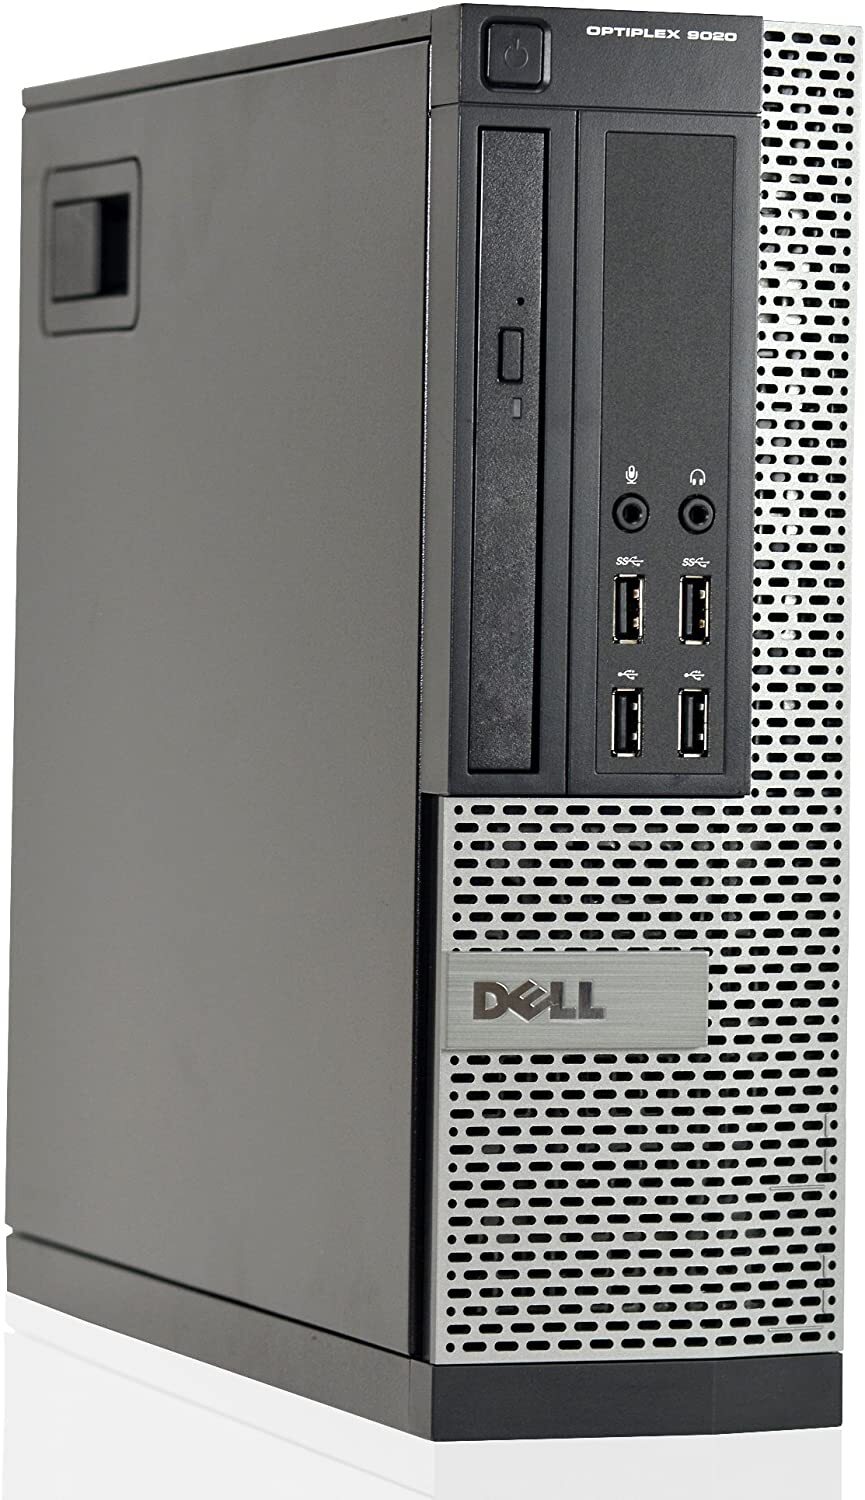 Dell OptiPlex 9020 SFF Intel i5 4590 3.30Ghz 4GB RAM 320GB HDD NO OS Full Size Image